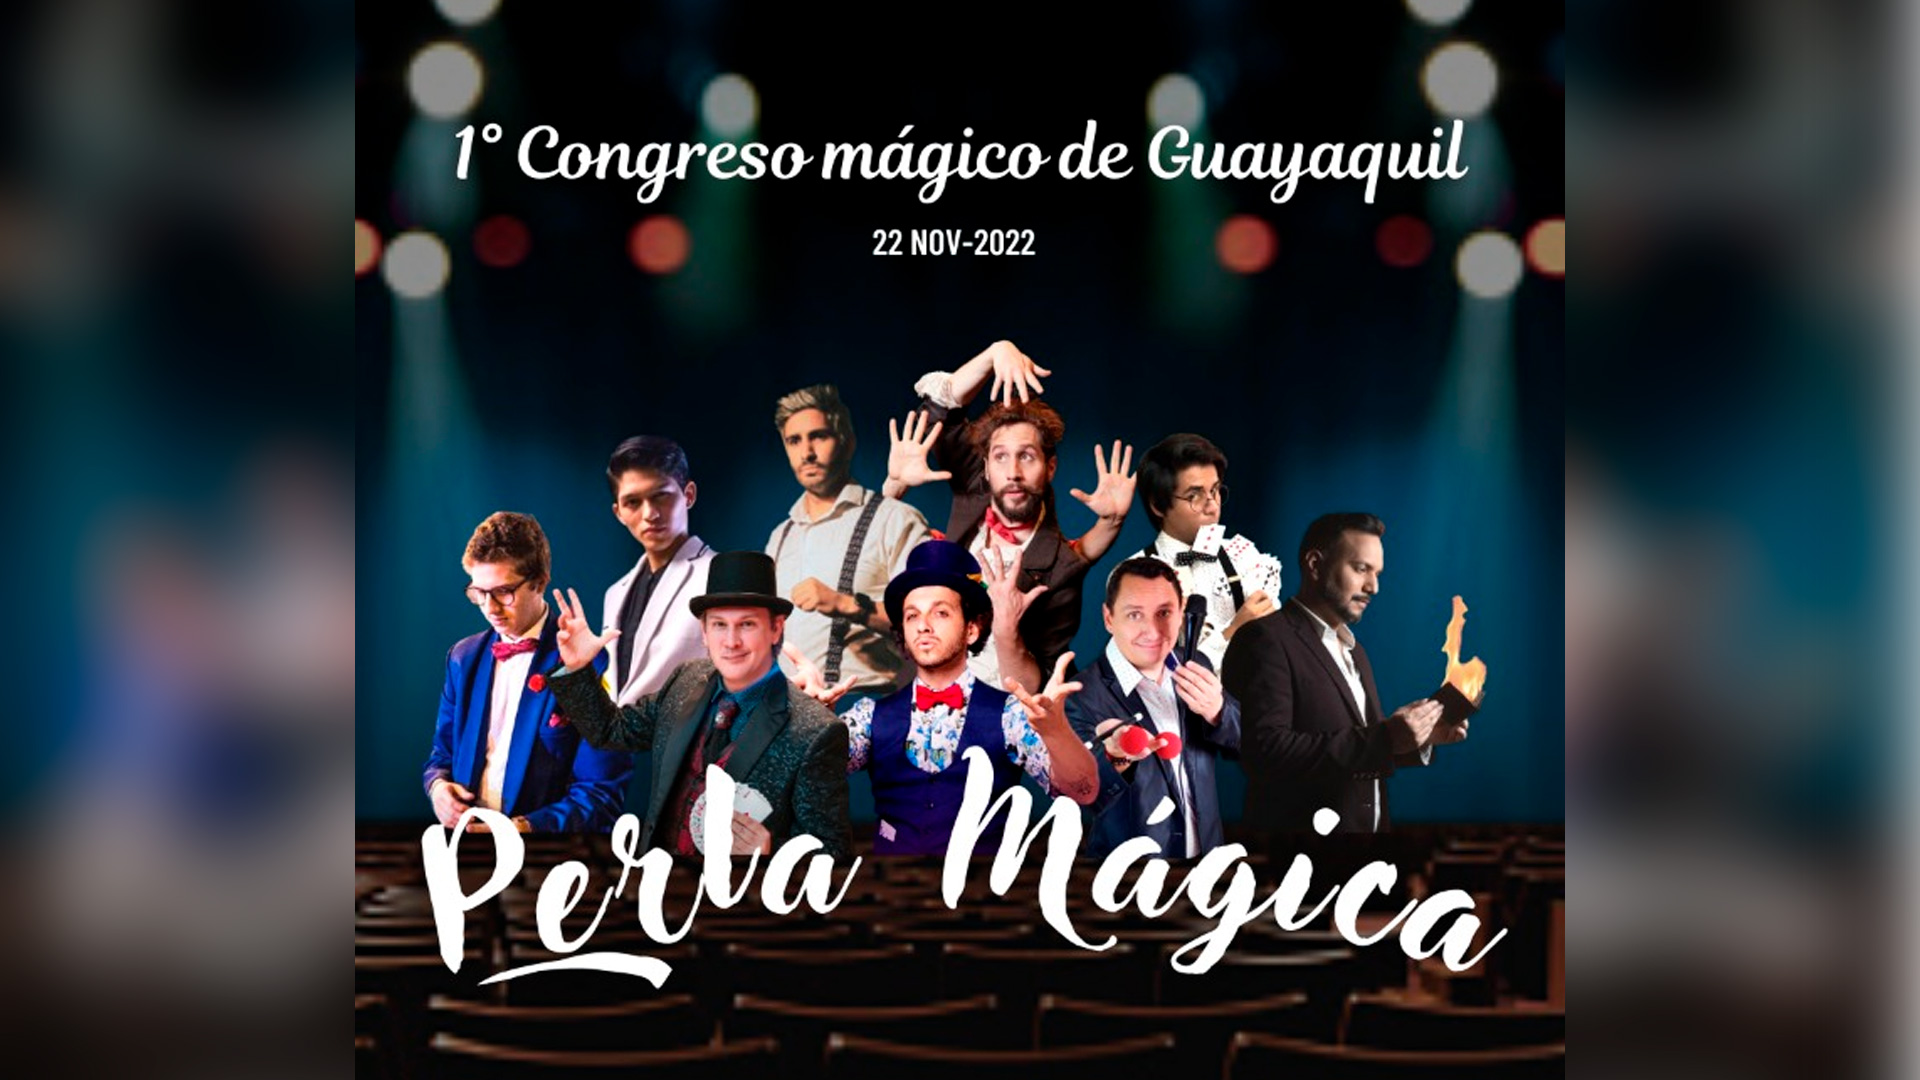 1-congreso-magico-guayaquil-perla-magica